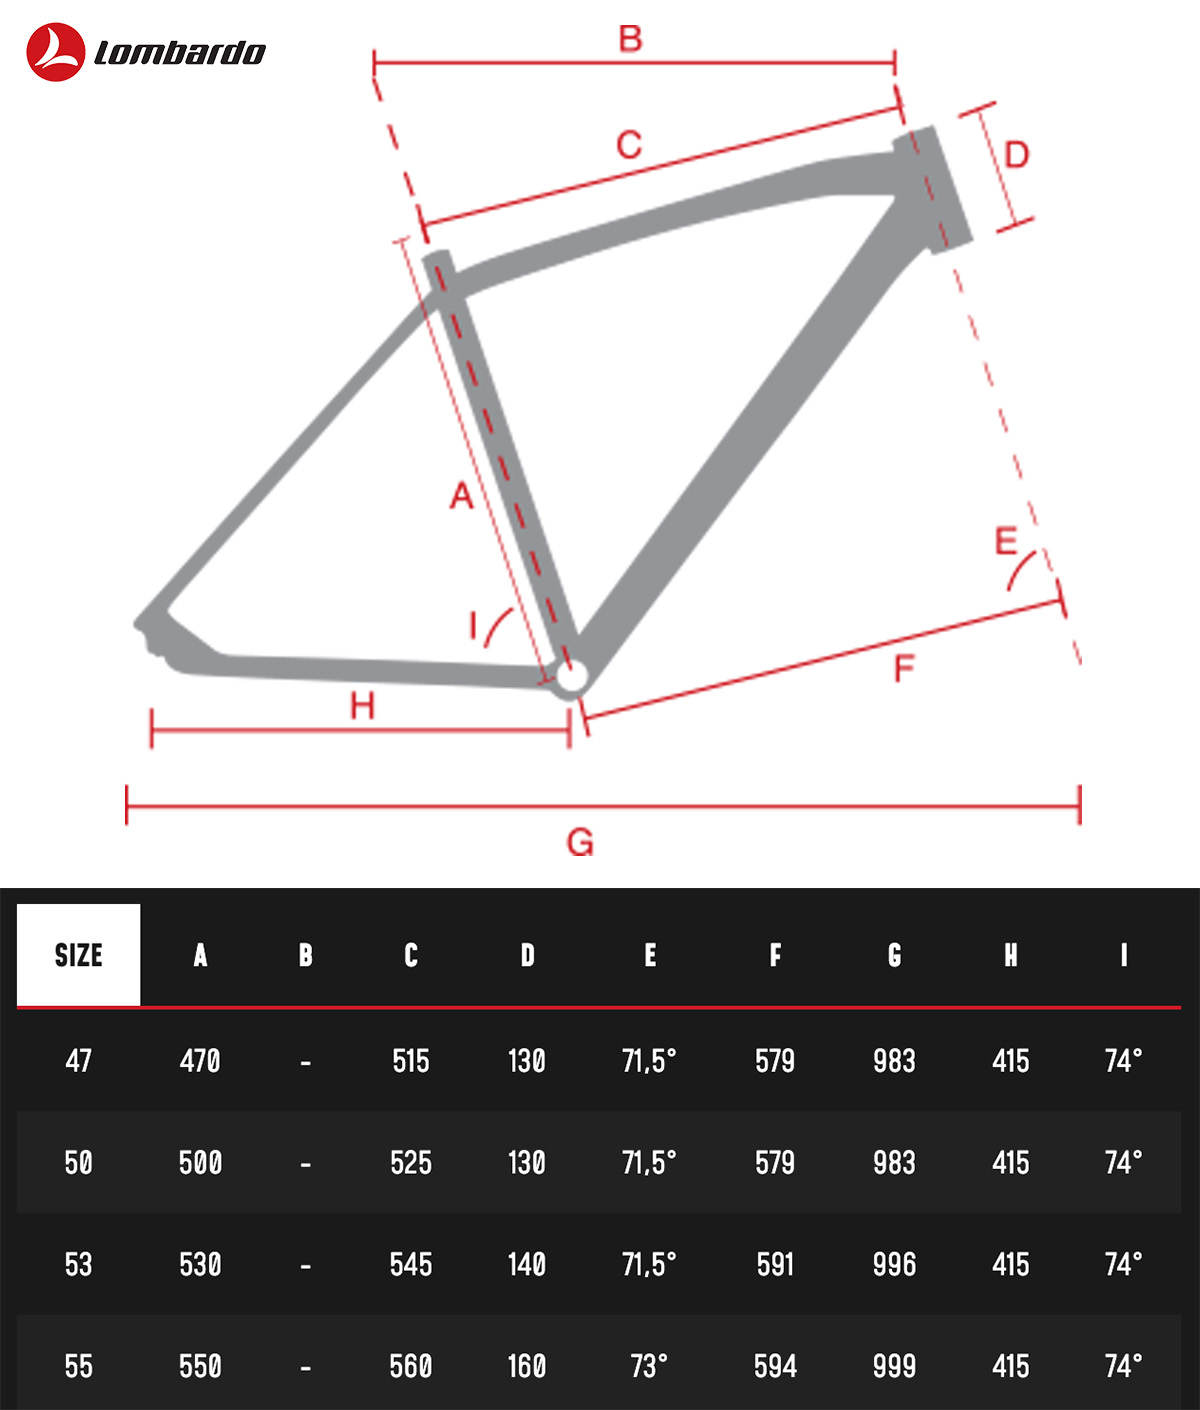 La tabella con le geometrie della nuova ebike da corsa Lombardo Mugello R52 2022